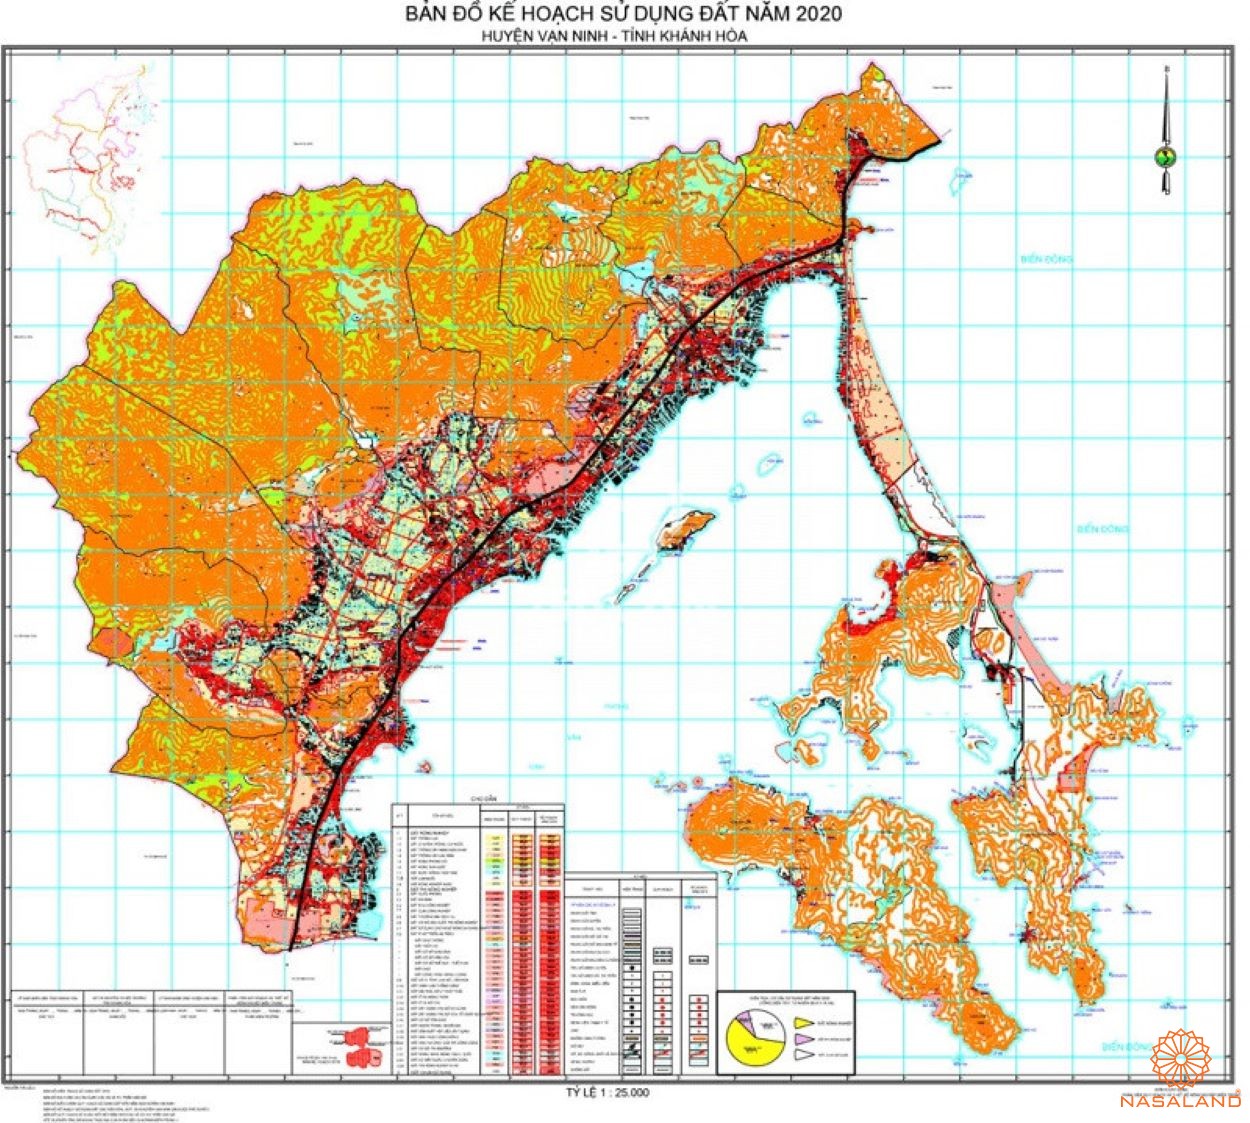 Bản đồ kế hoạch sử dụng đất Huyện Vạn Ninh, Tỉnh Khánh Hòa năm 2020